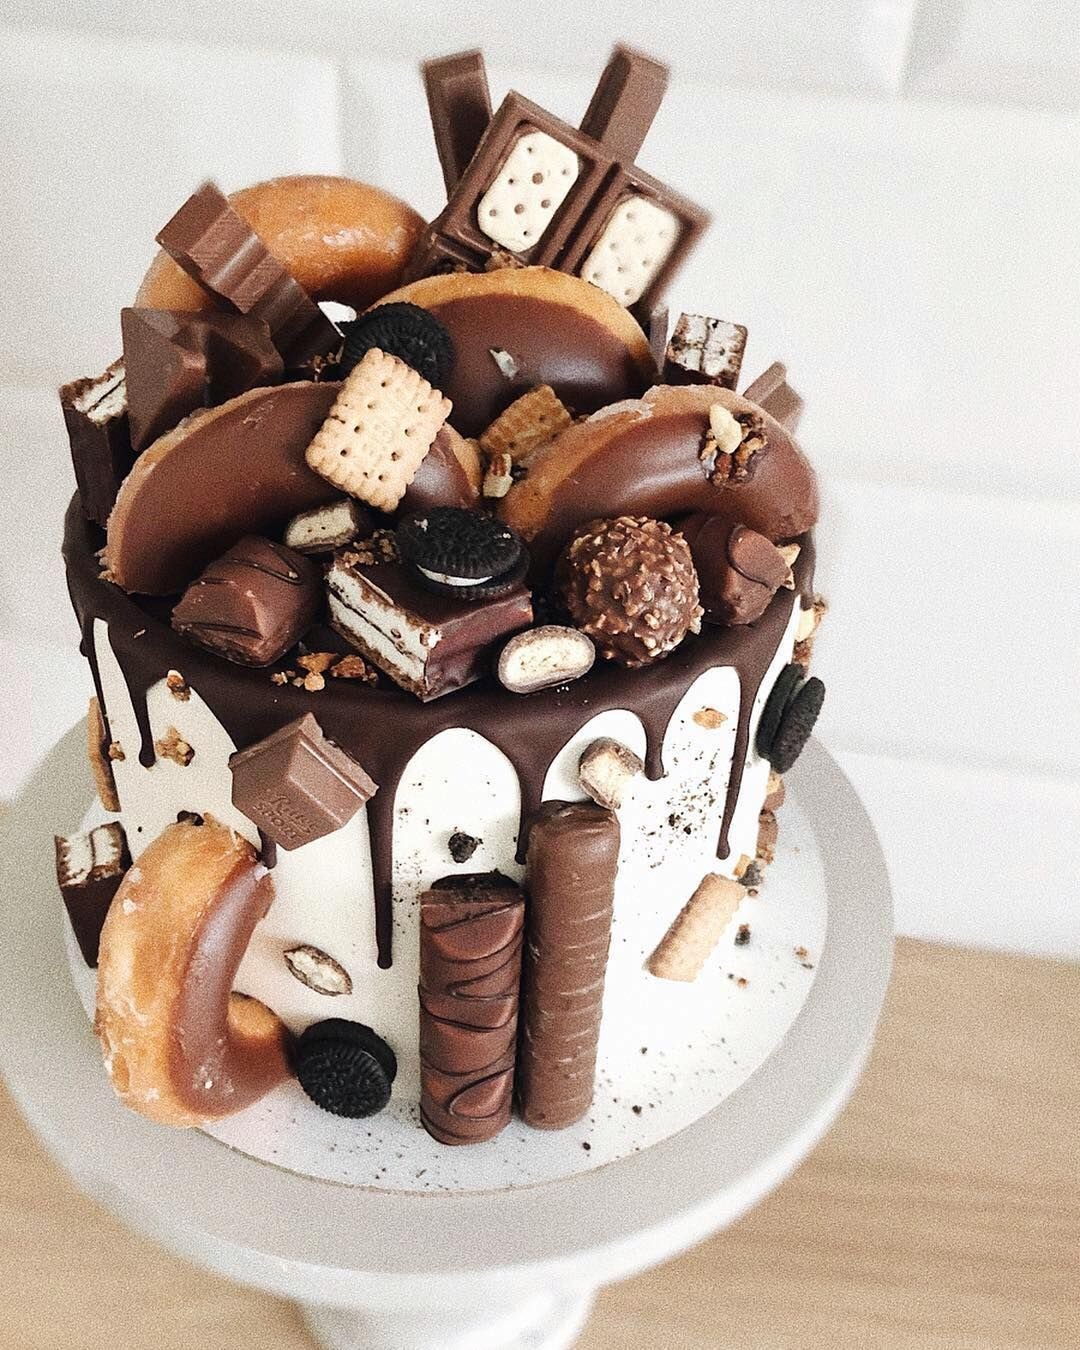 Choco decoration на русском. Украшение торта шоколадными конфетами. Торт «шоколадка». Украшение торта млажосьями. Торт с шоколадным декором.